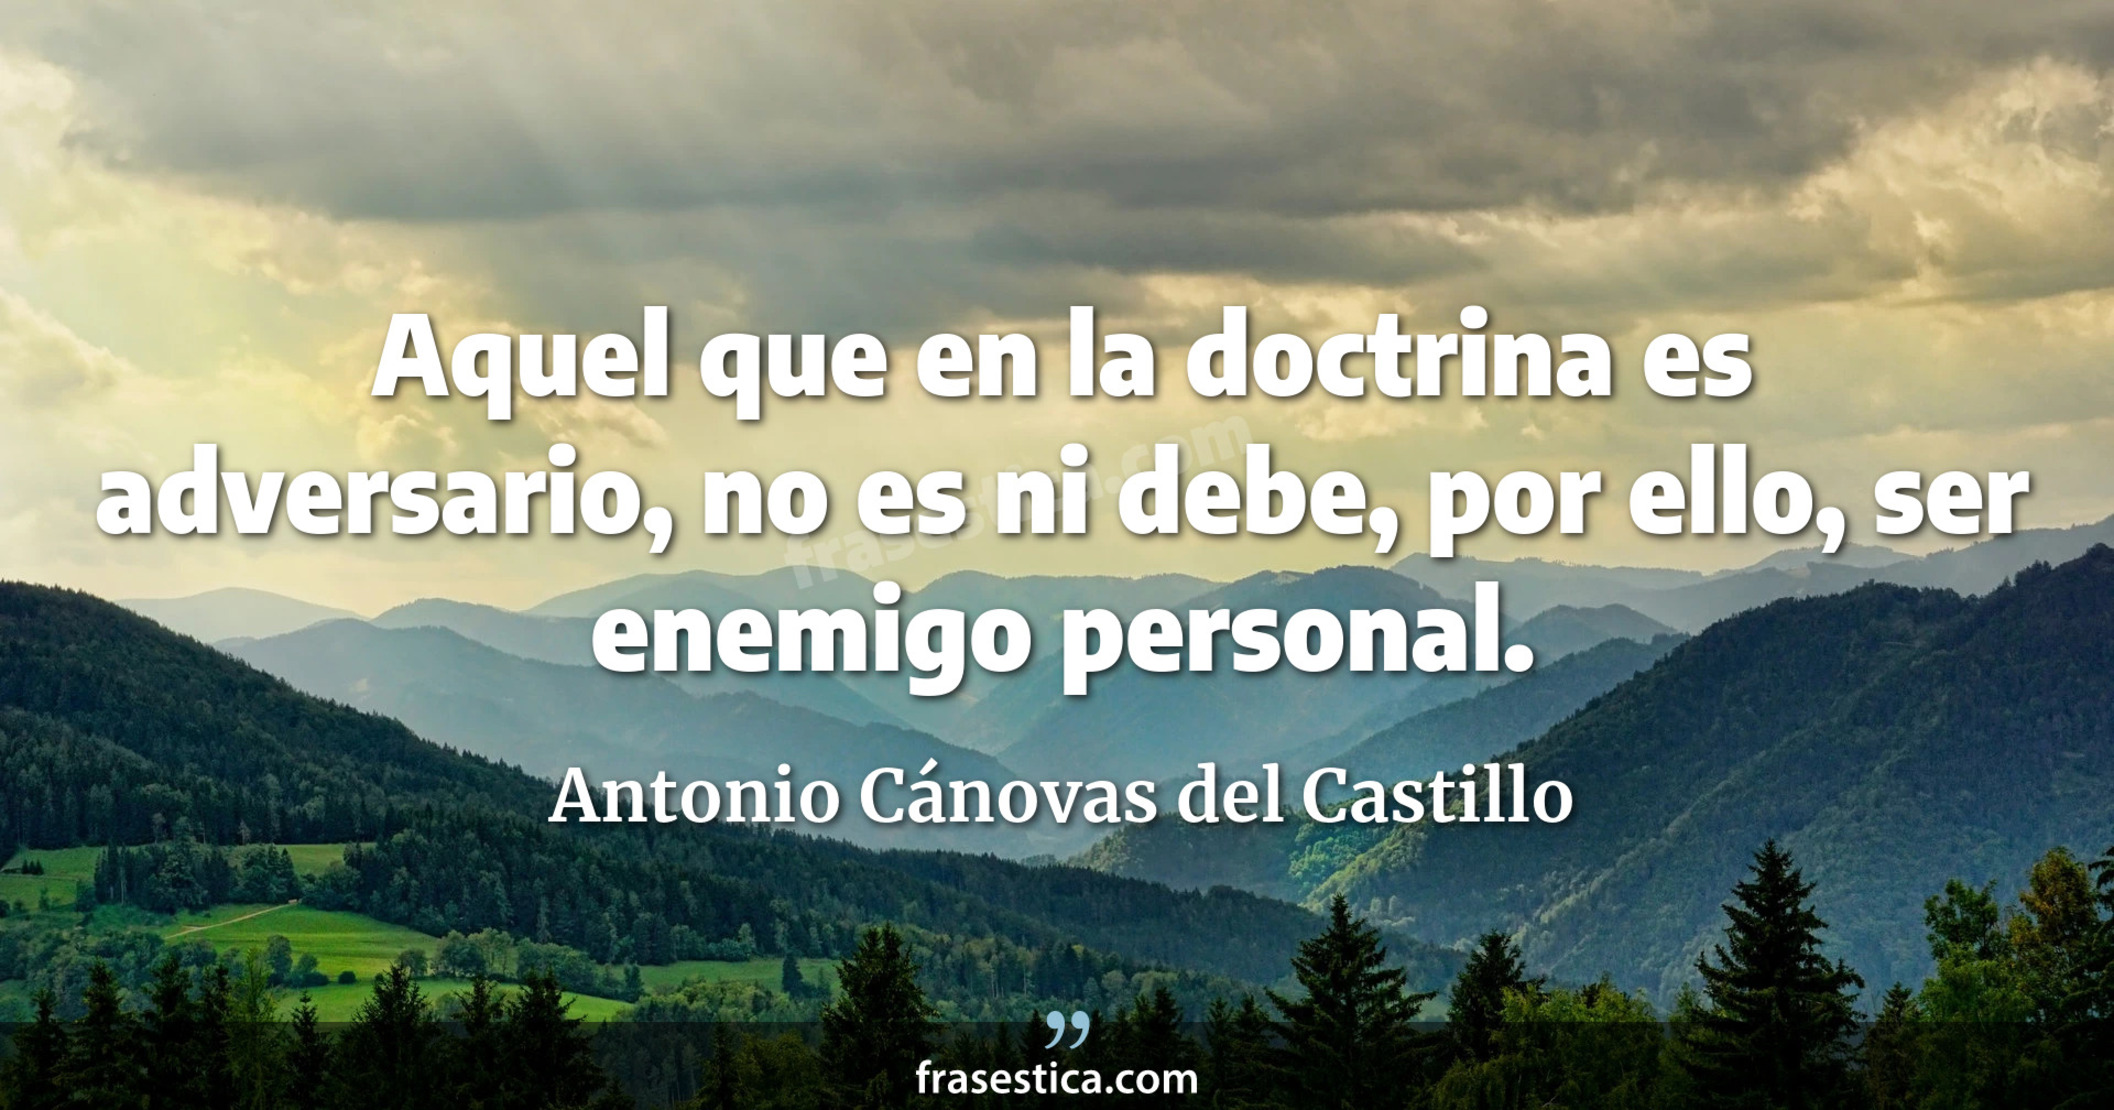 Aquel que en la doctrina es adversario, no es ni debe, por ello, ser enemigo personal. - Antonio Cánovas del Castillo